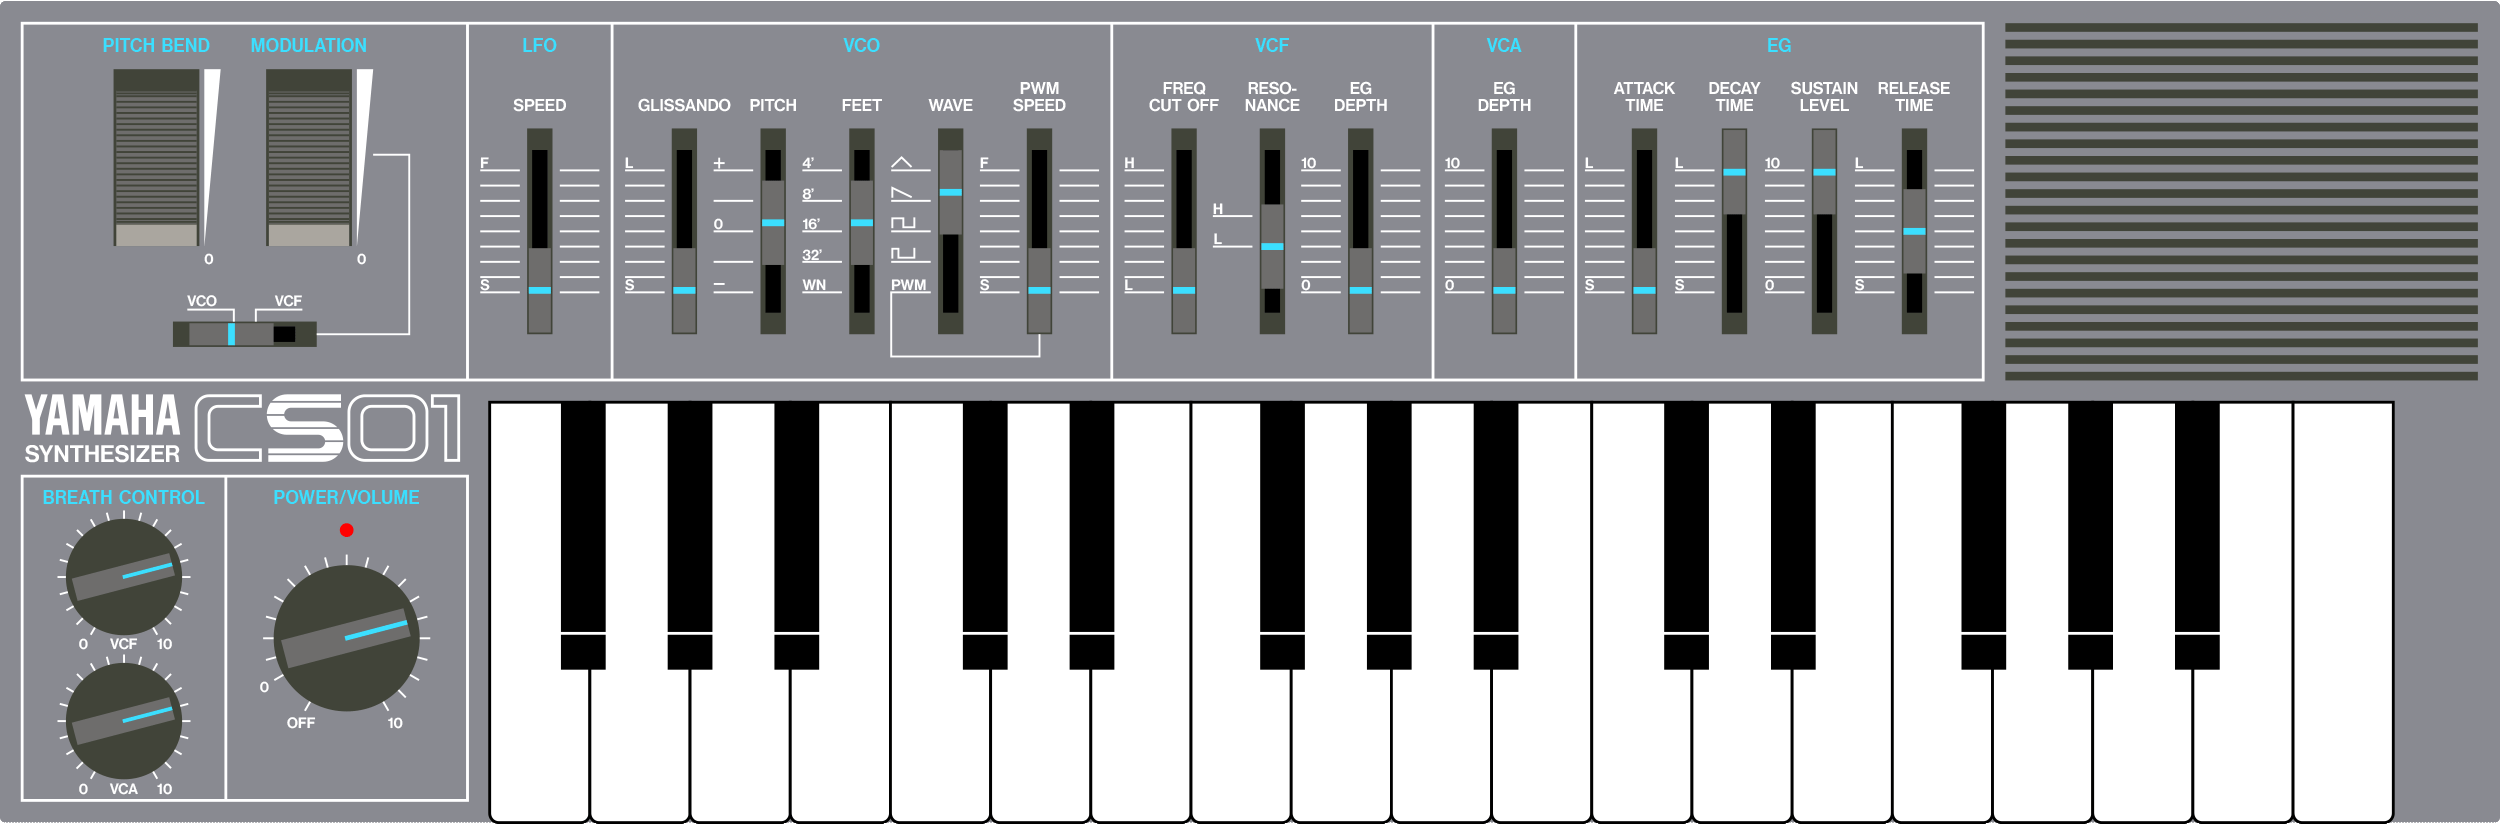 Yamaha CS01 analog micro synthesizer